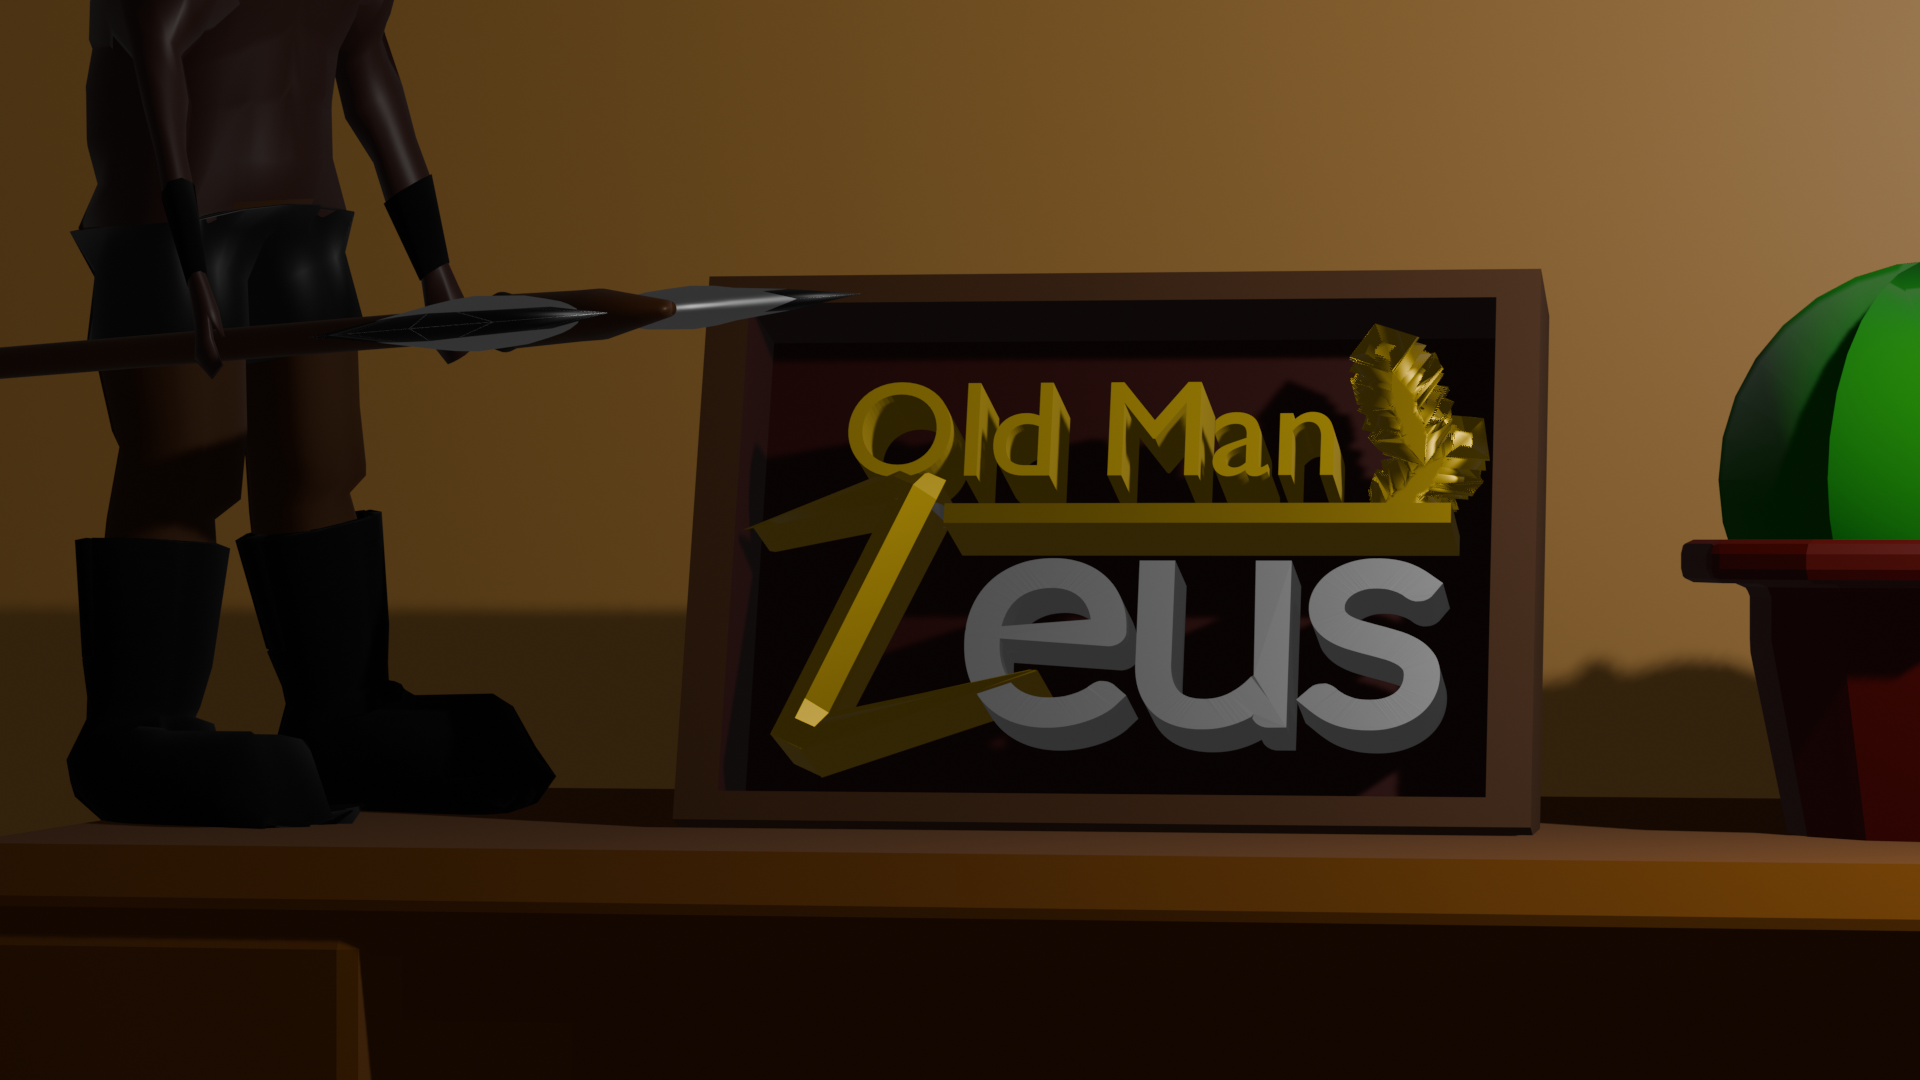 Old Man Zeus